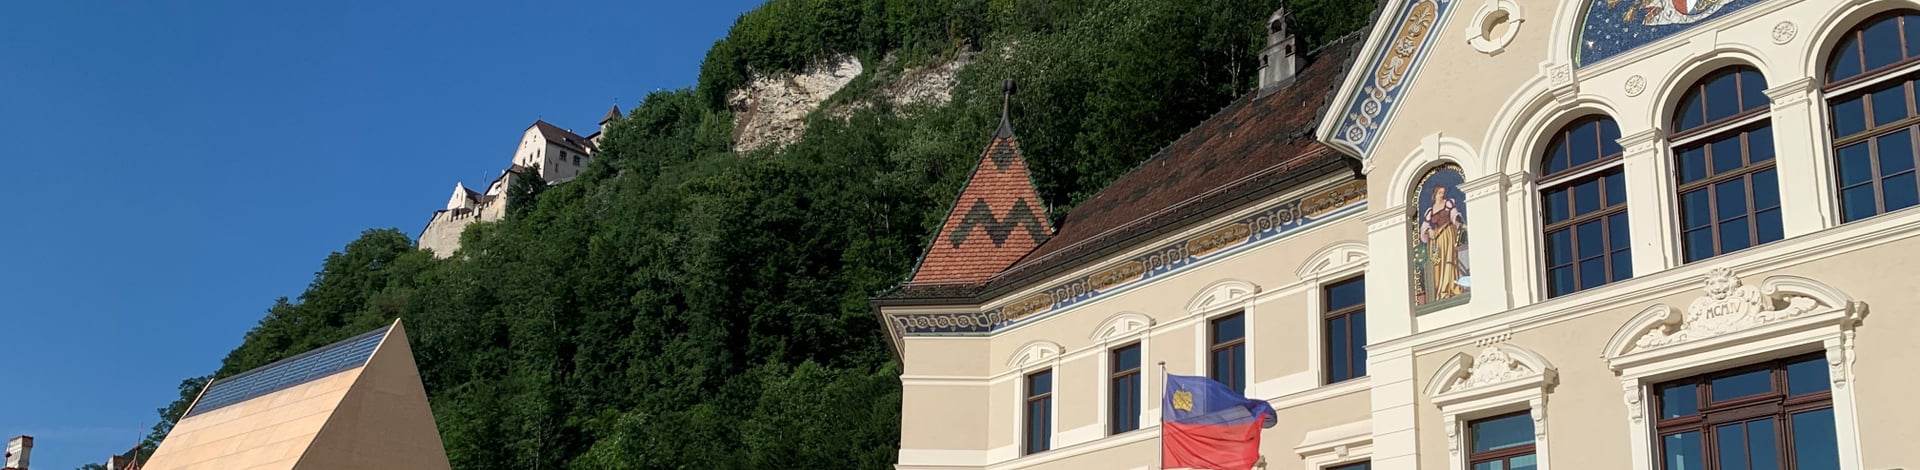 Gebäude mit Hügel in Vaduz